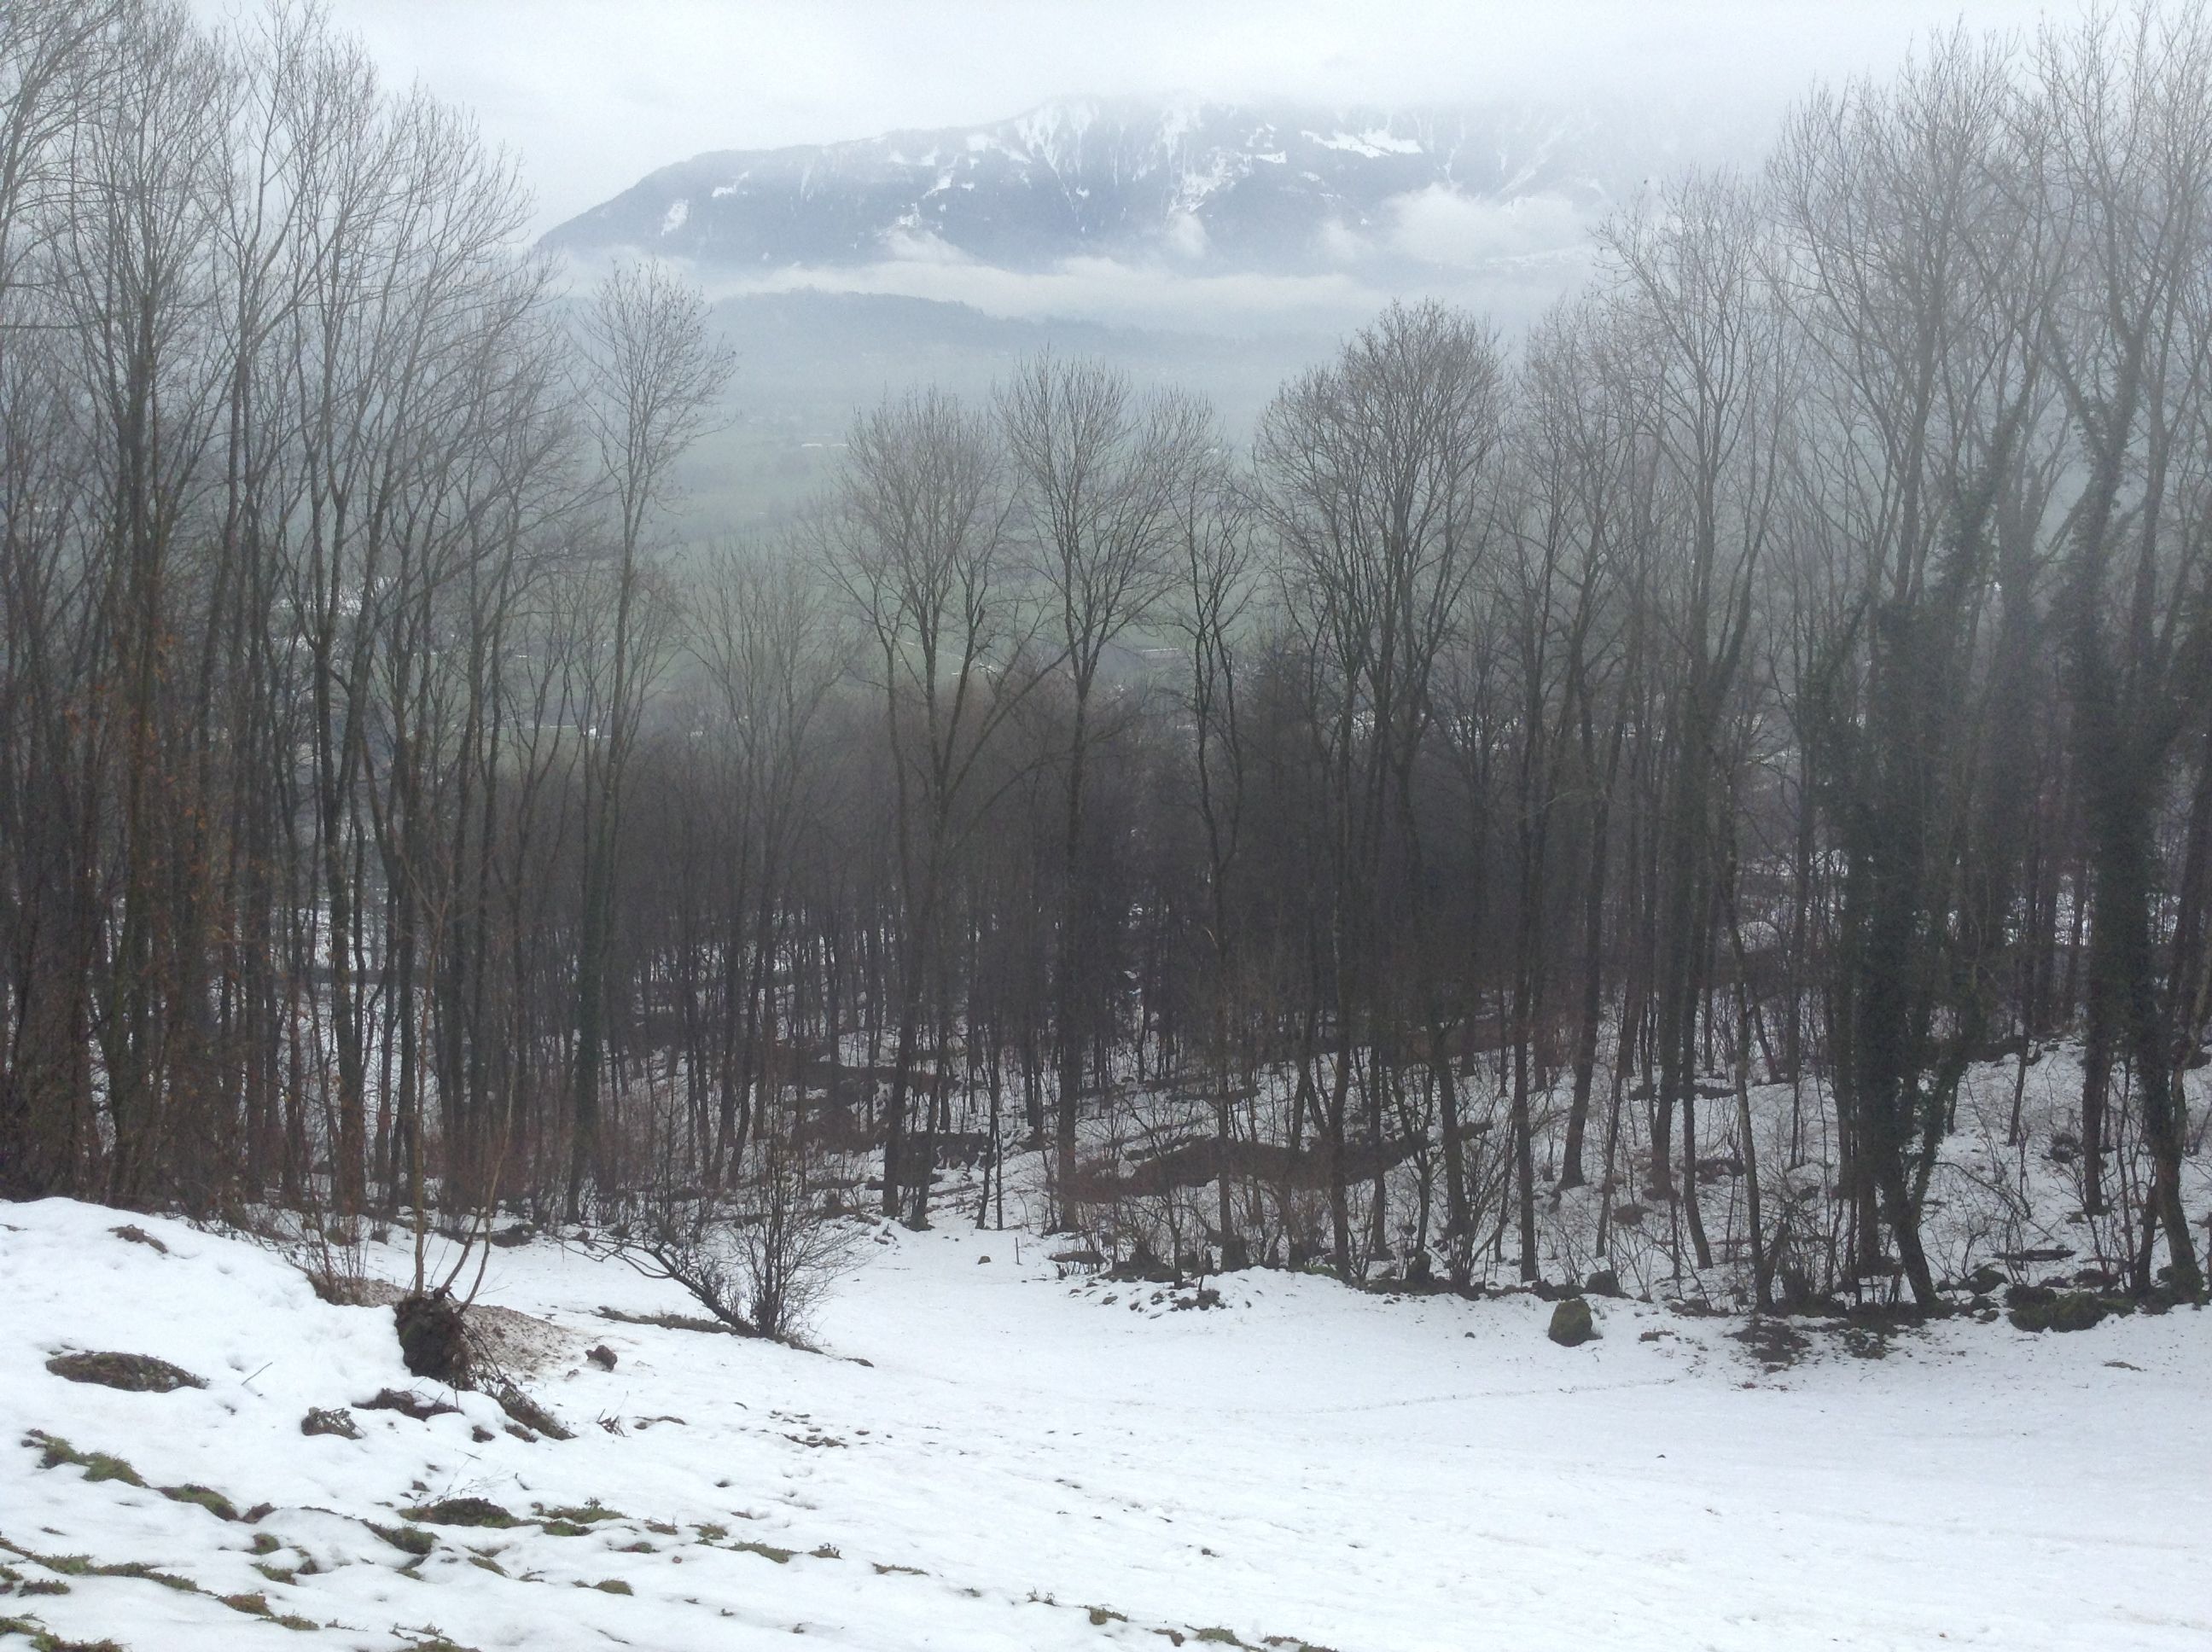 Bare December woods between Frumsen and Sax of St. Gallen canton looking east (Photo P. Hunt 2012)